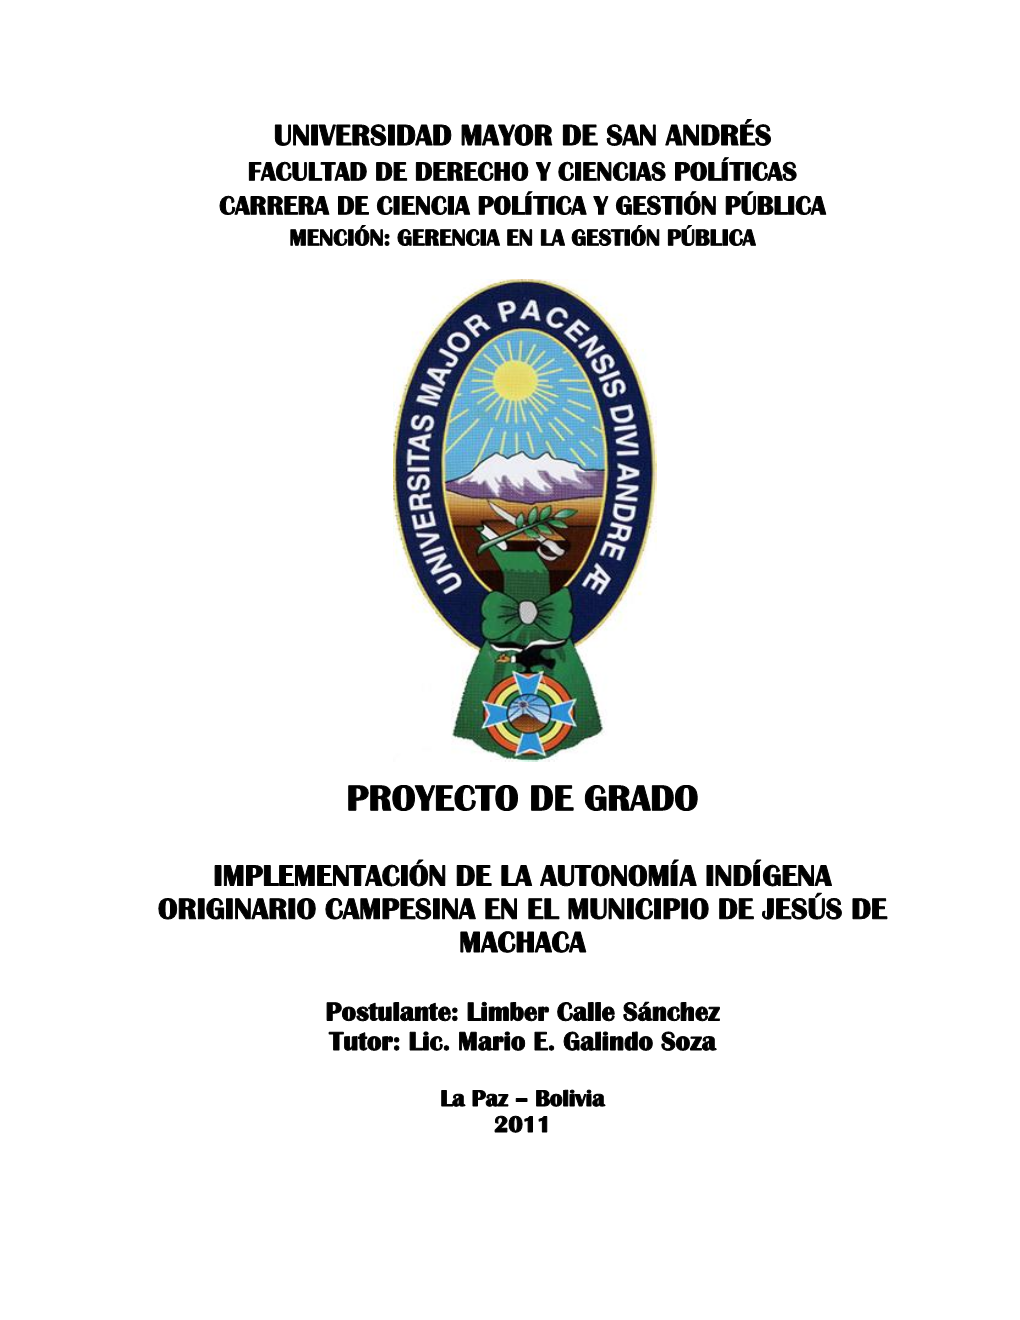 Implementación De La Autonomía Indígena Originario Campesina En El Municipio De Jesús De Machaca